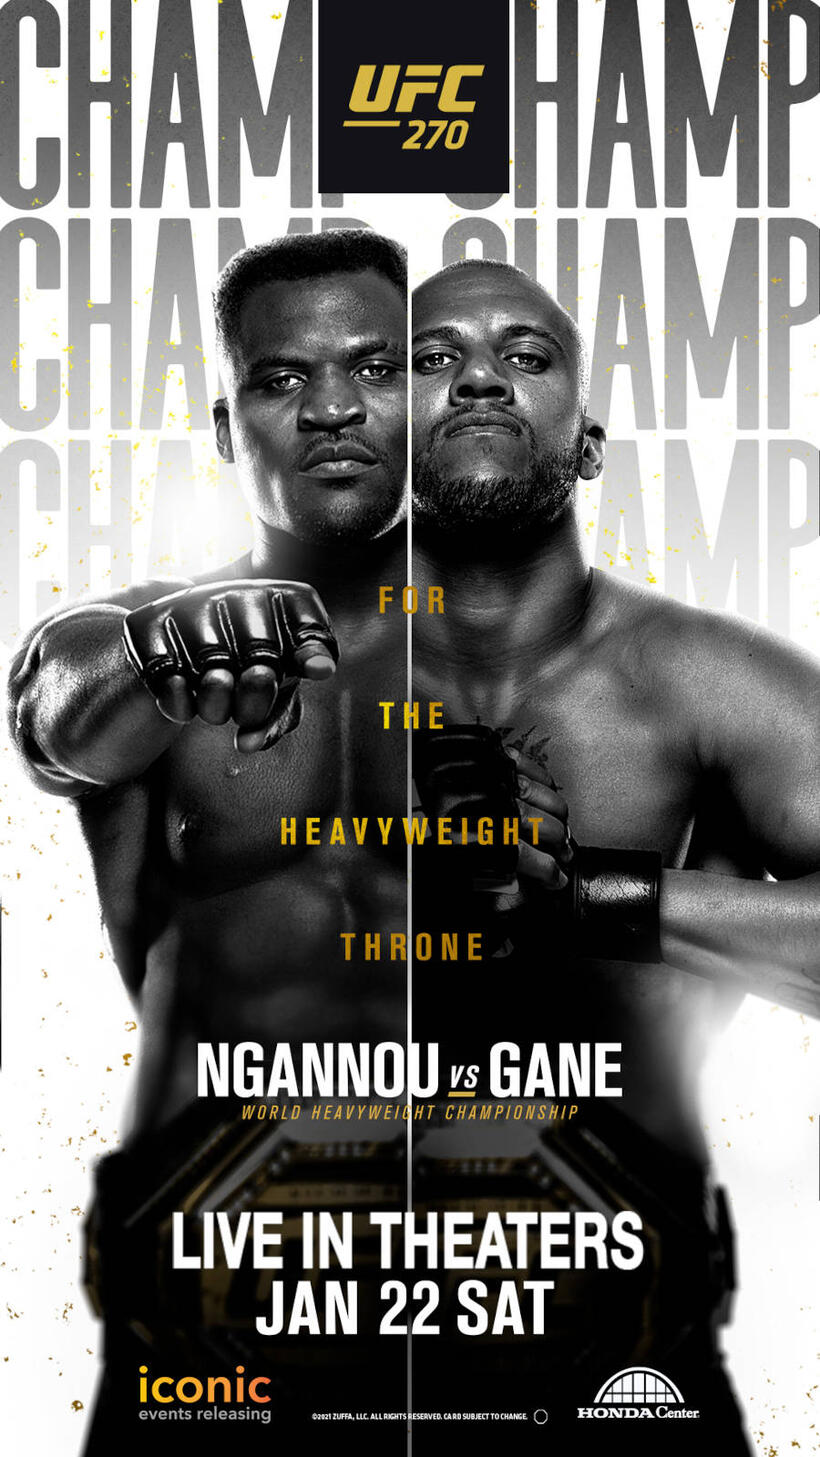 UFC 270 Ngannou vs